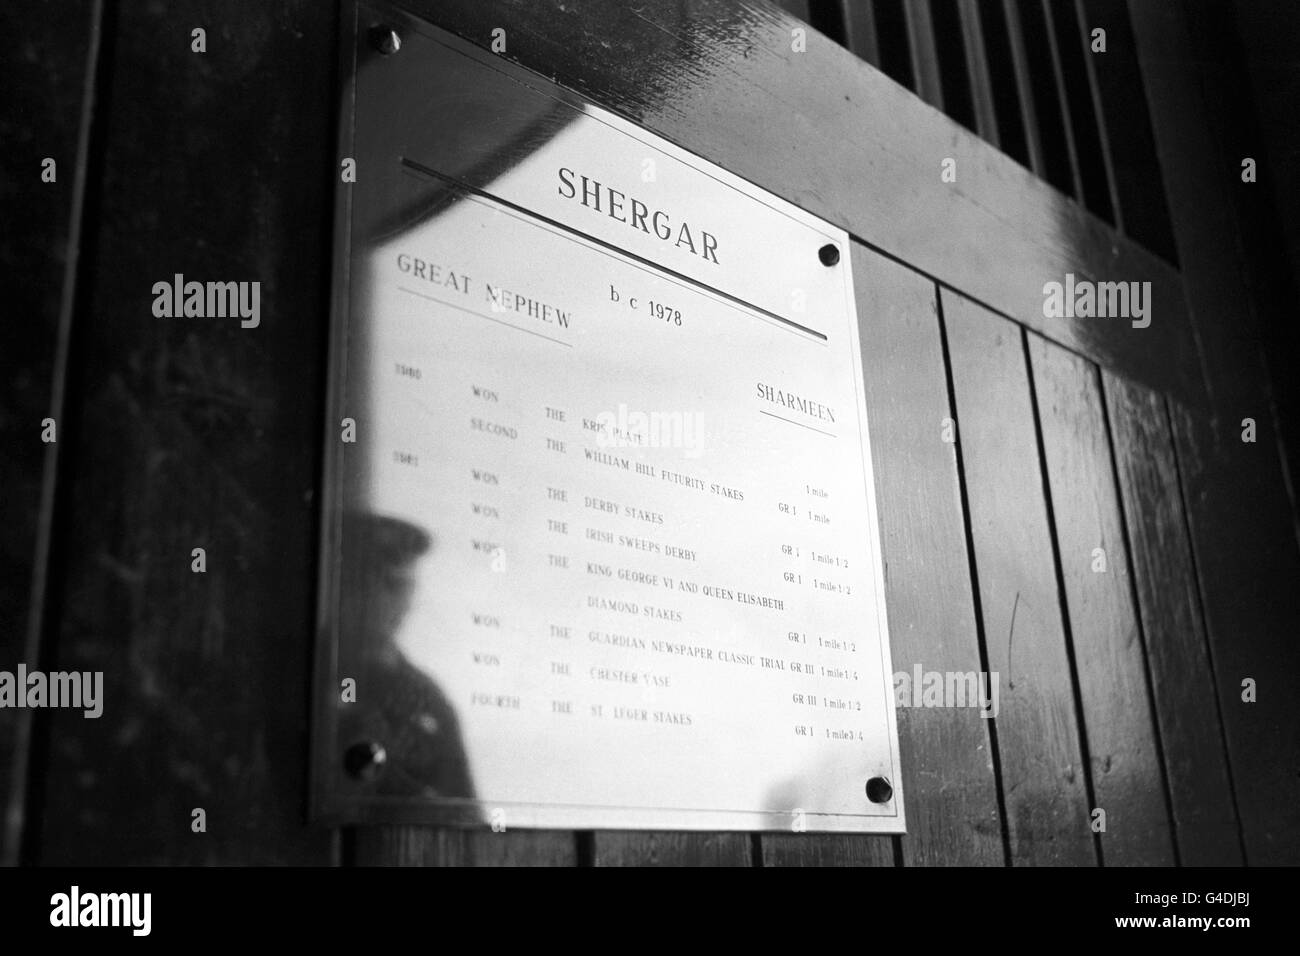 Image de la plaque d'identification de la boîte stable de Shergar, dont la prise a eu lieu le mardi 8 février à la ferme de clous à Ballymany, comté de Kildare, République d'Irlande. Shergar n'a jamais été trouvé et personne n'avait été accusé de vol. Banque D'Images